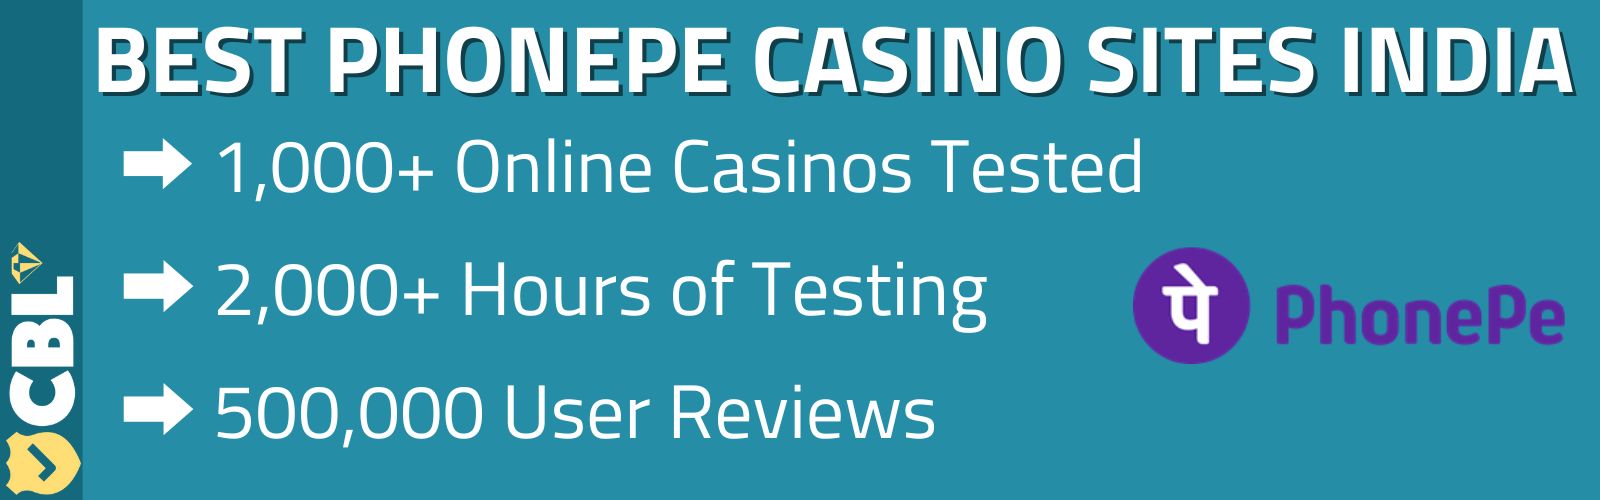 Phonepe casino sites